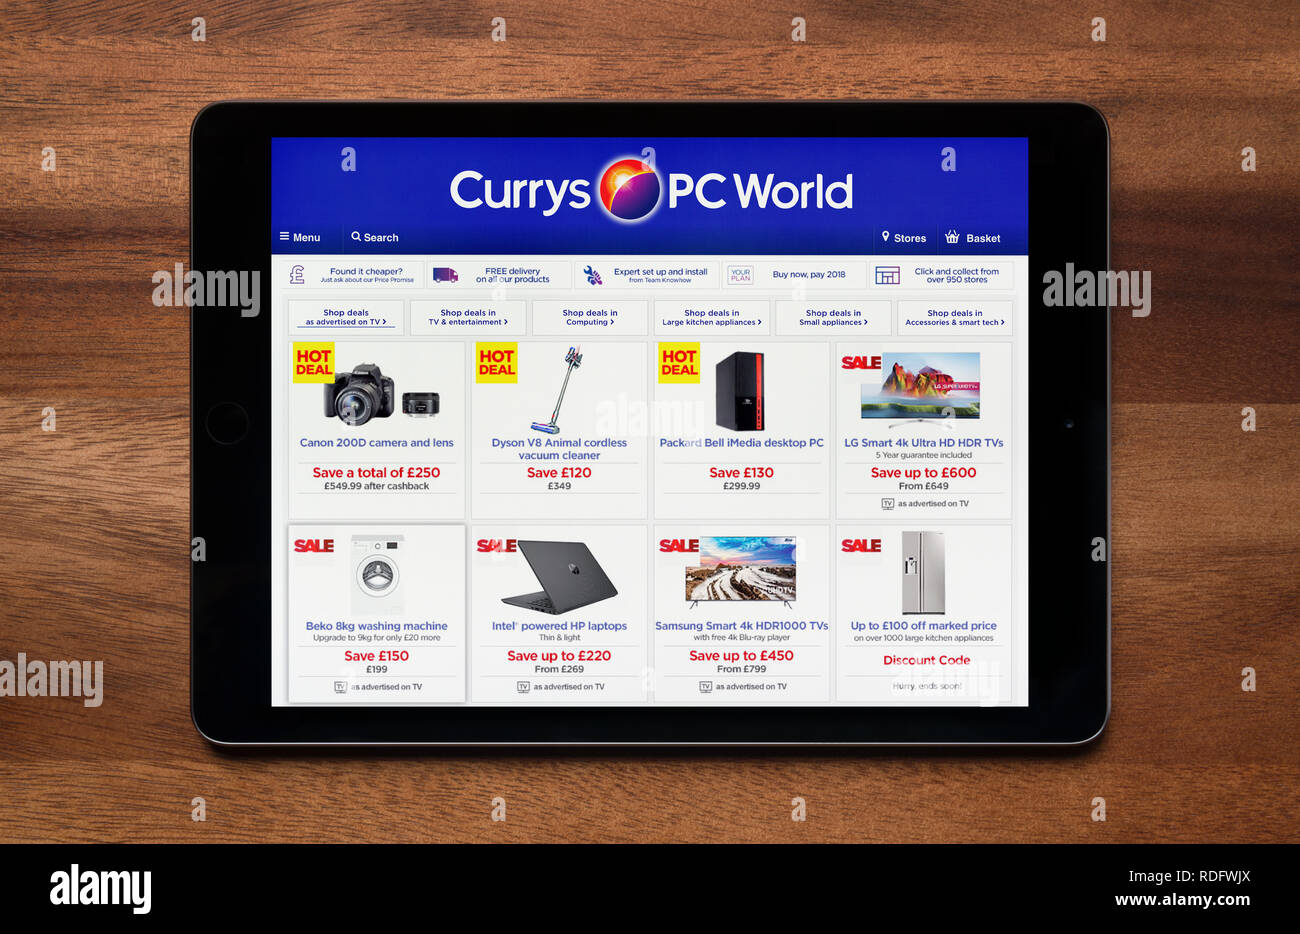 El sitio web de PC World, Currys es visto en un iPad, que descansa sobre una mesa de madera (uso Editorial solamente). Foto de stock